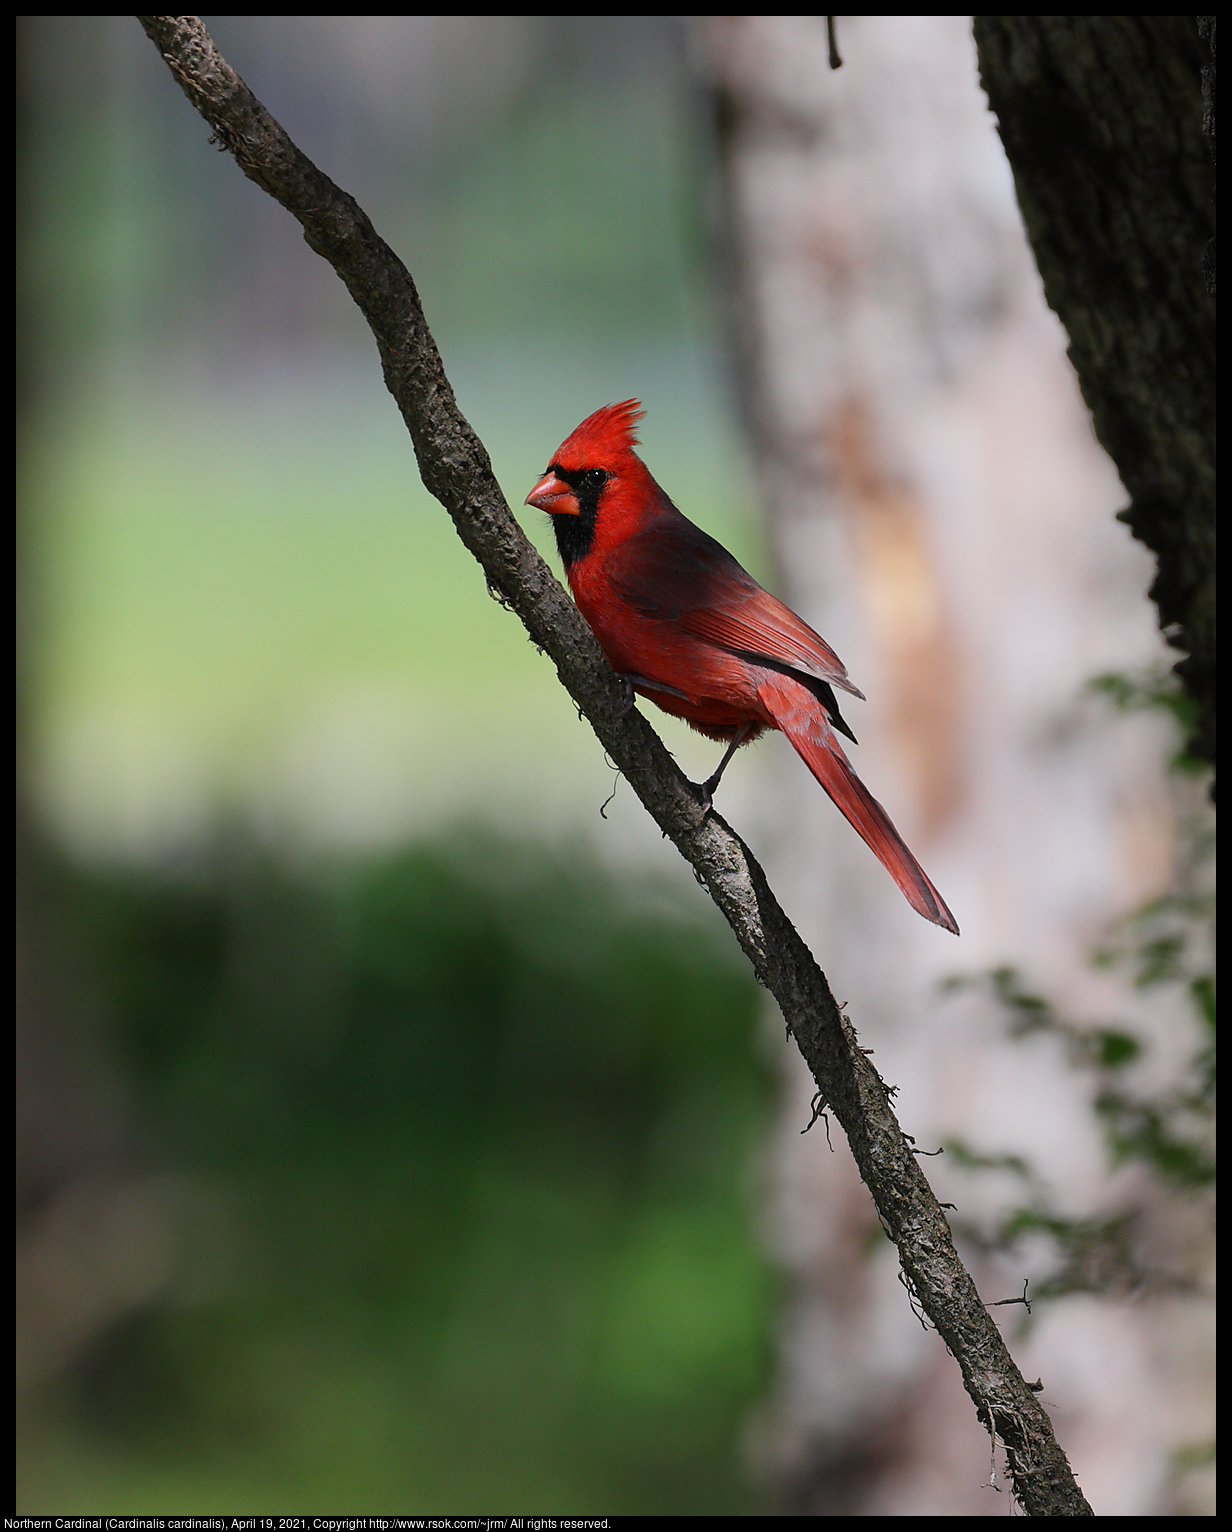 Northern Cardinal (Cardinalis cardinalis), April 19, 2021